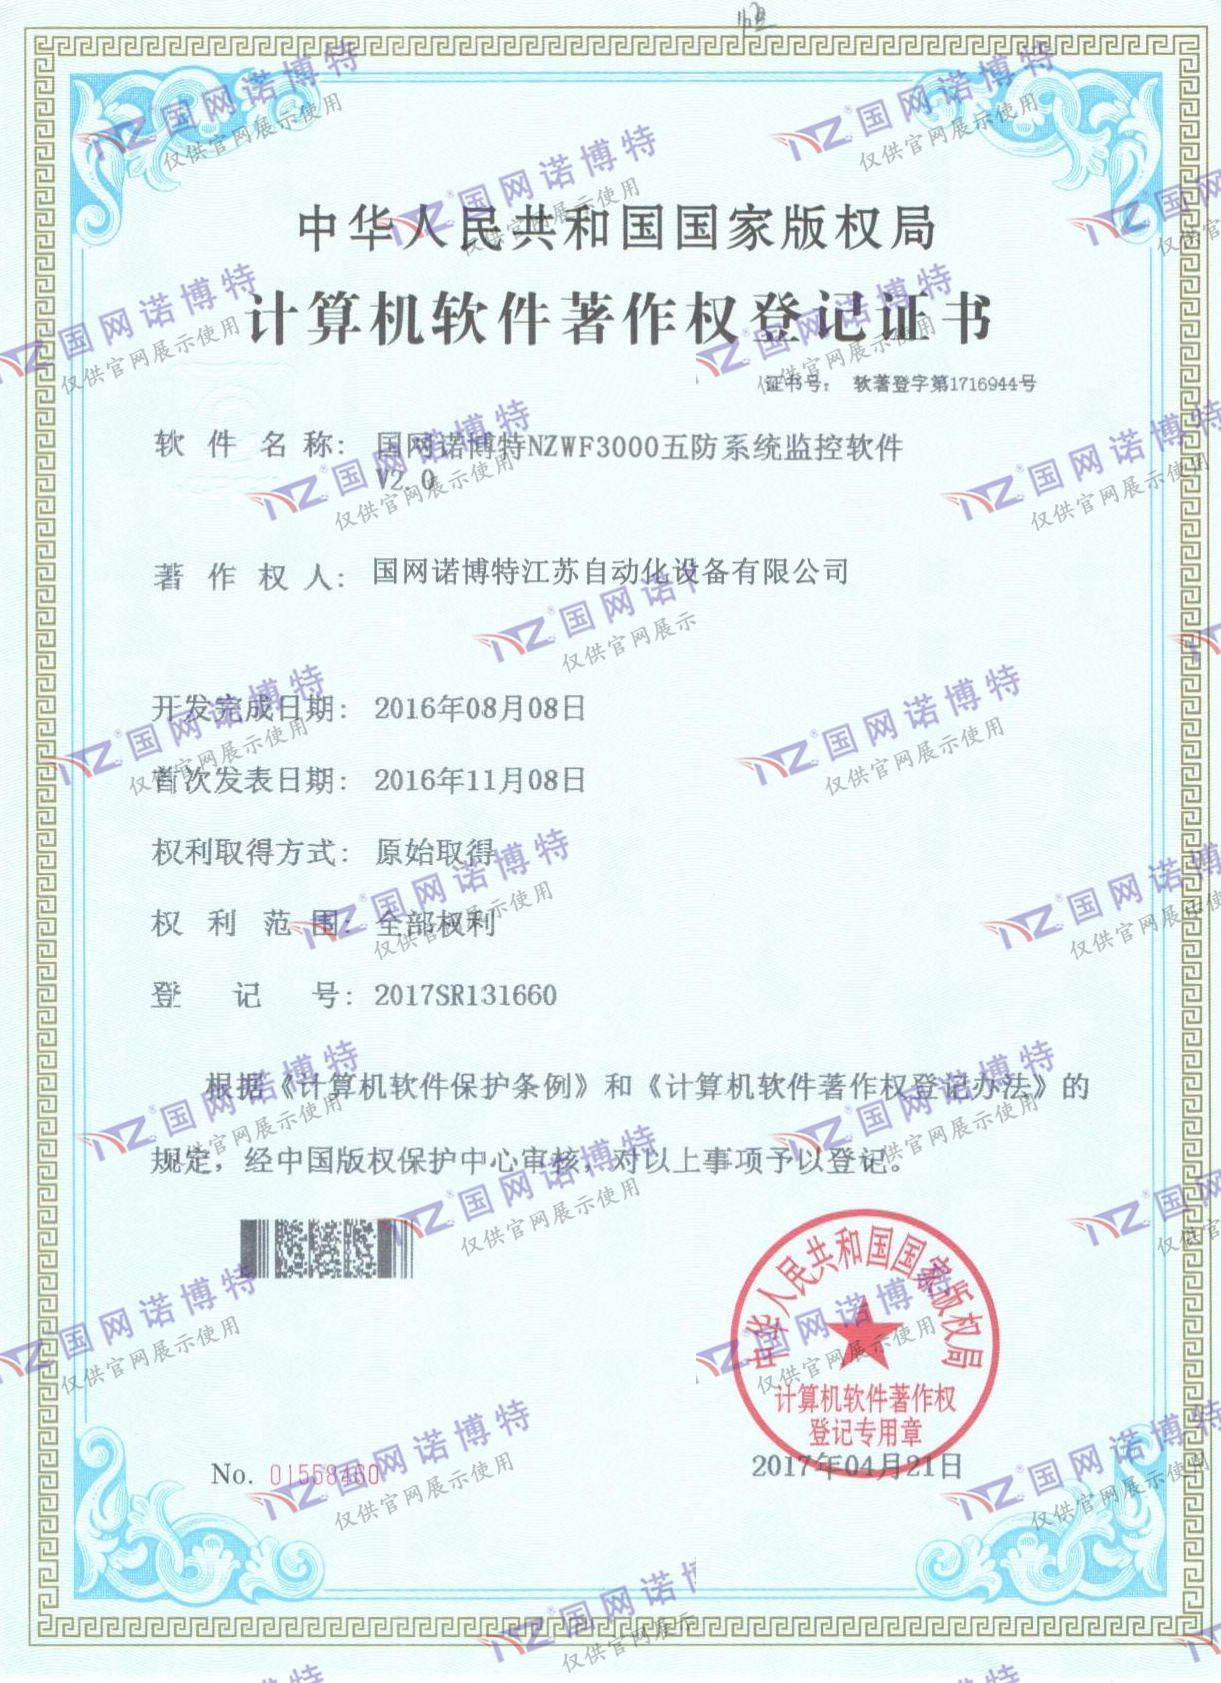 NZWF3000五防系统计算机软件著作权登记证书（P)